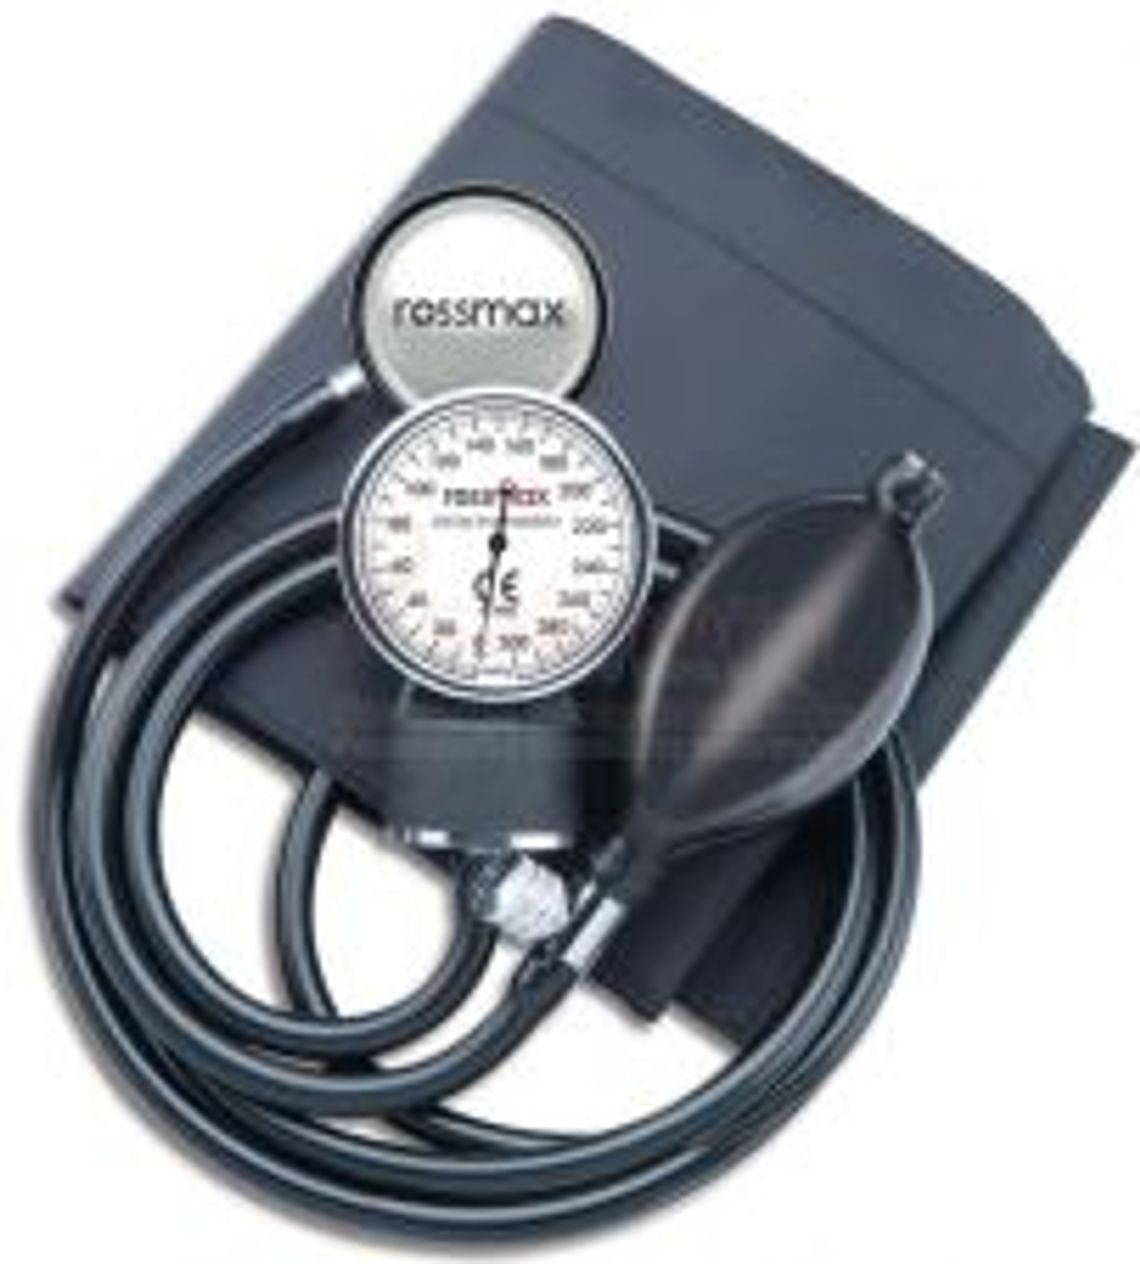 Twój Sklep Medyczny - Tradycyjny ciśnieniomierz zegarowy - Rossmax GB 102